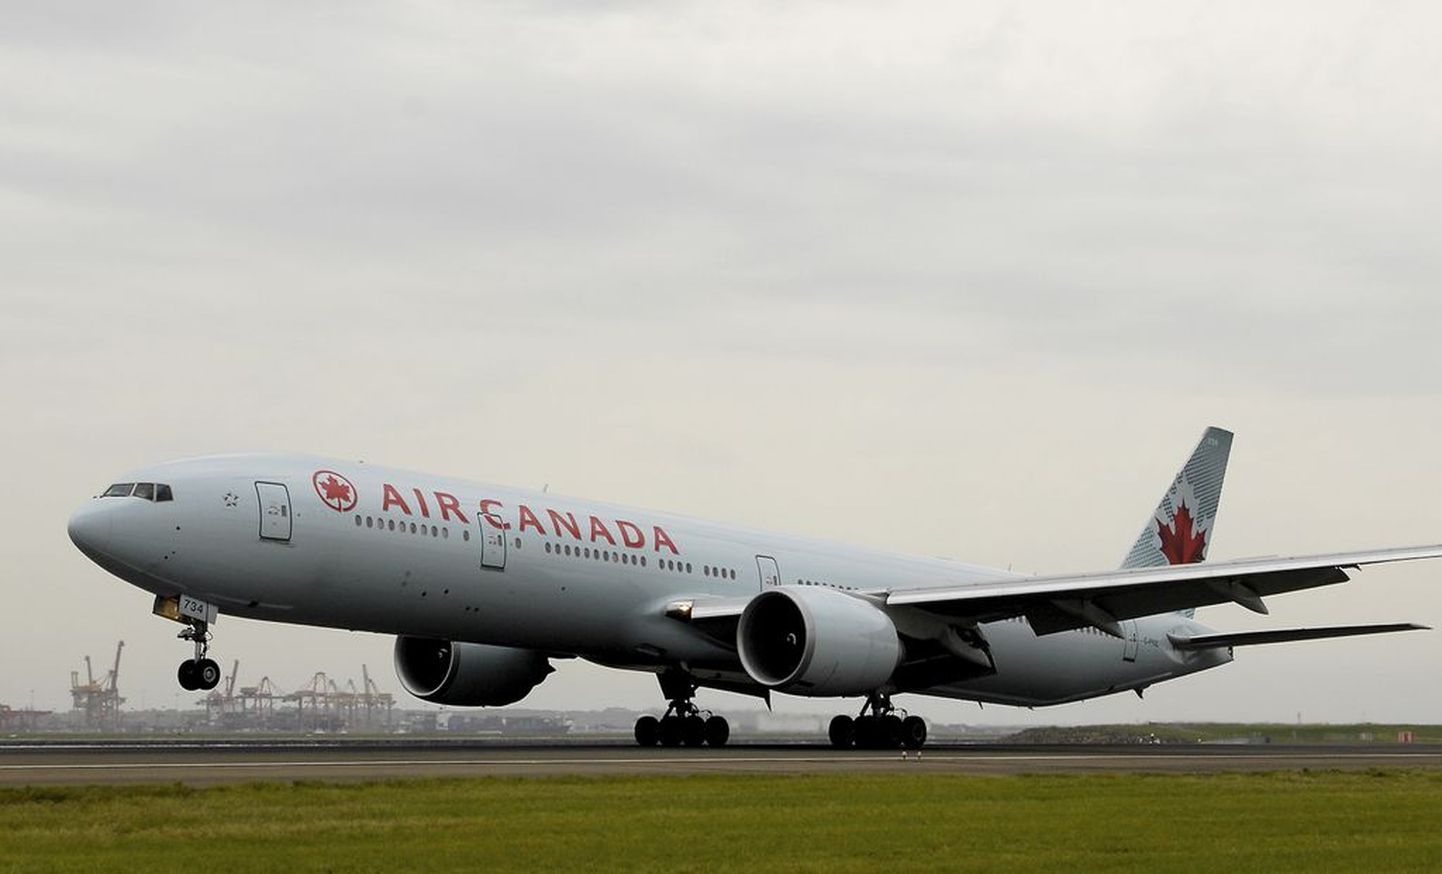 Pildil jäädvustatud Air Canada lennuk ei ole juhtumiga seotud.